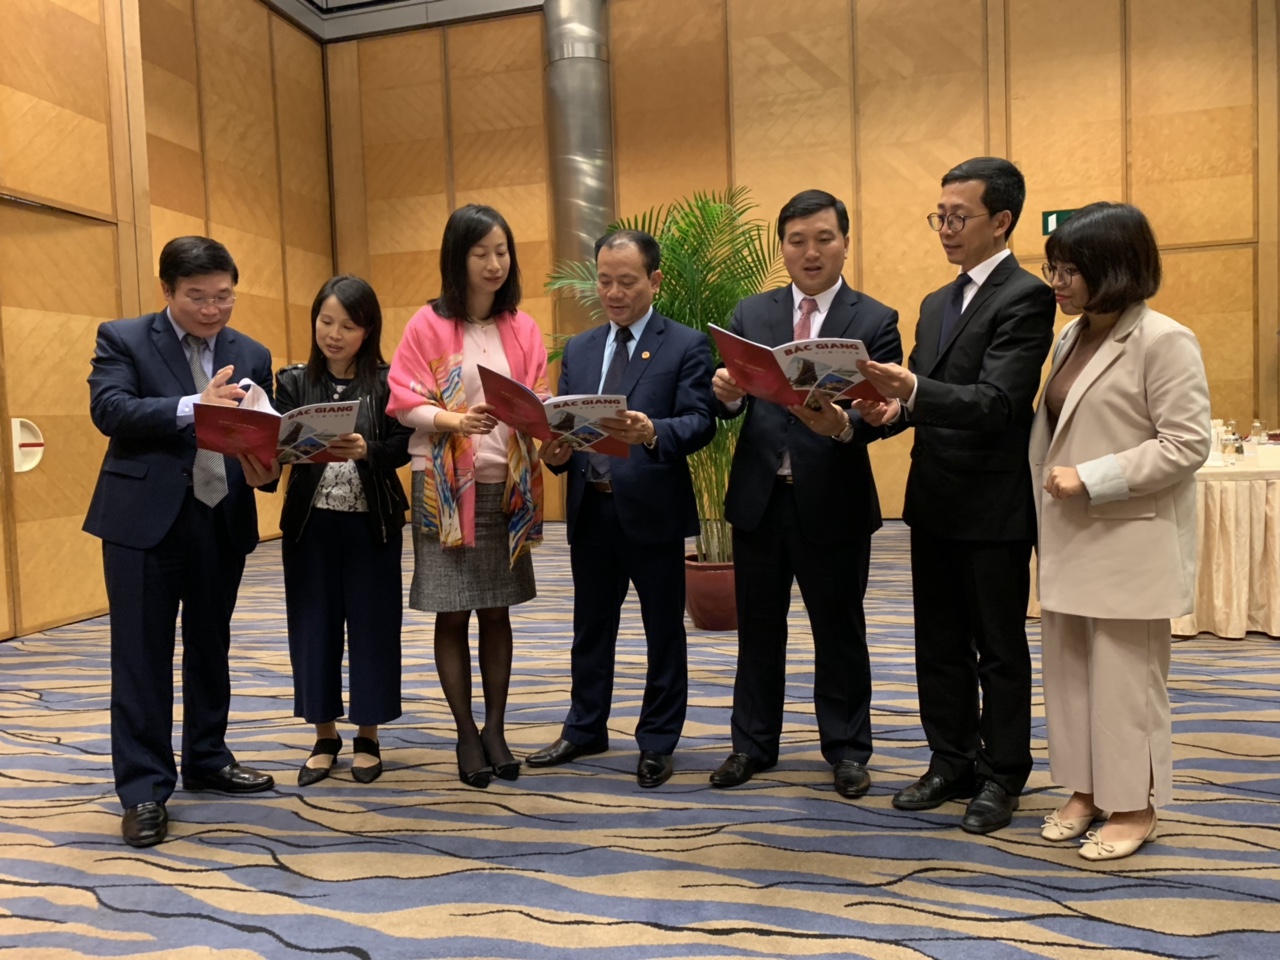 Bắc Giang tham dự hội nghị “Gặp gỡ thị trưởng các nước láng giềng” lần thứ 5